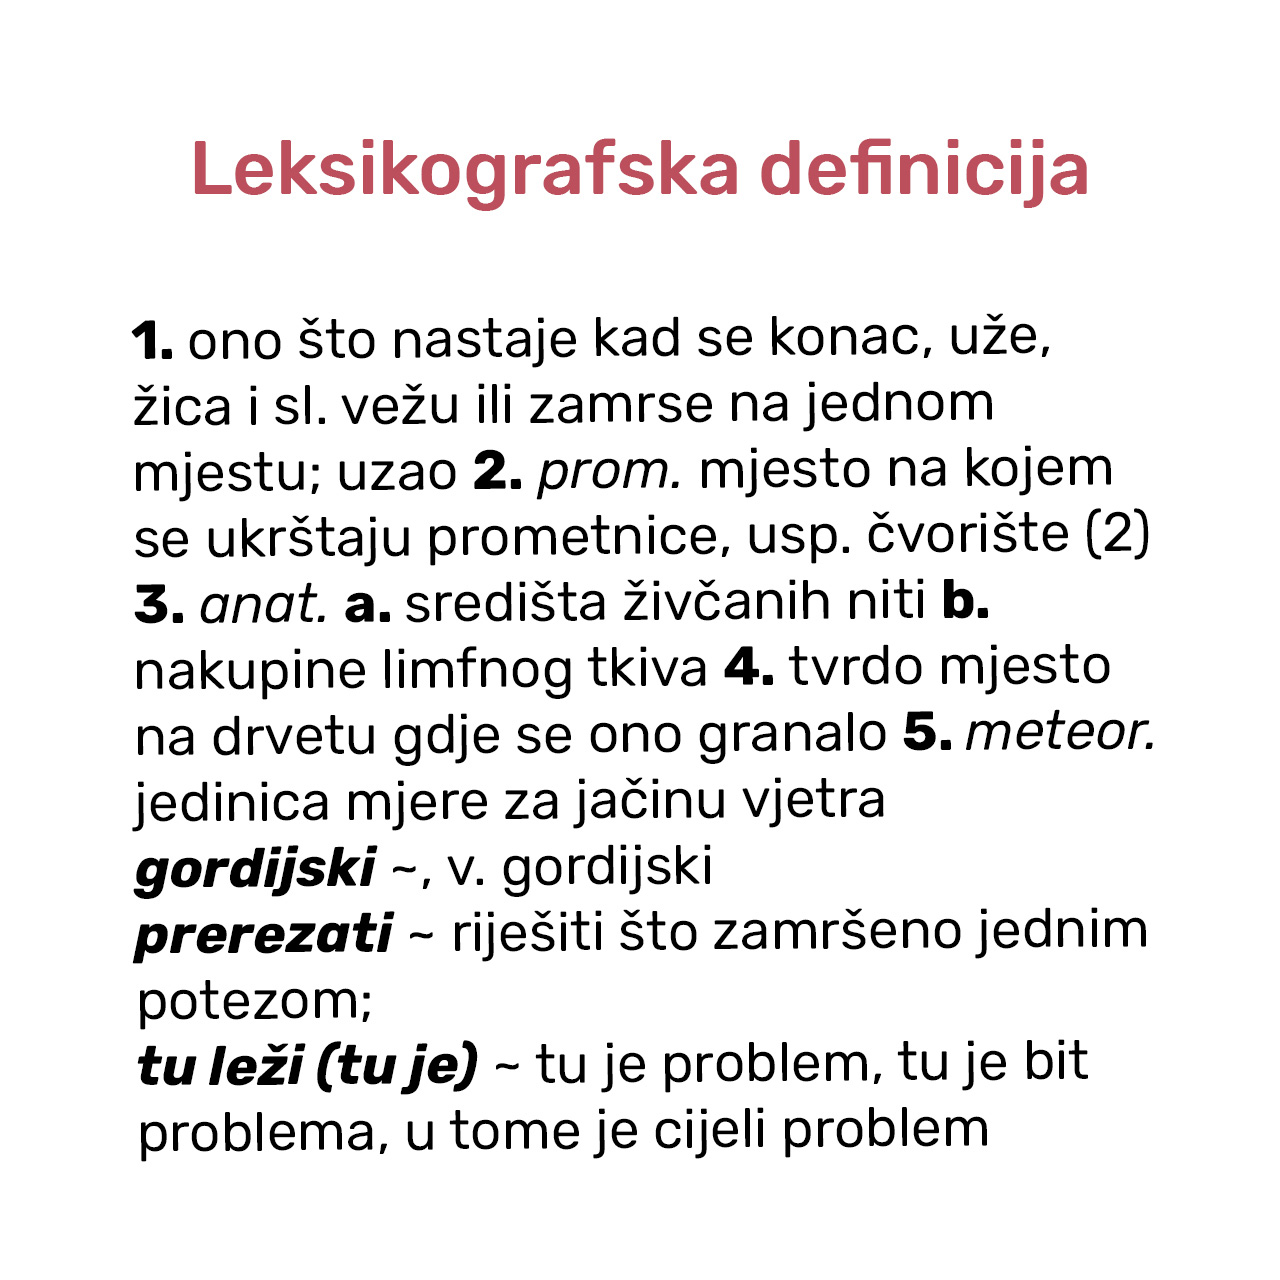 Leksikografska definicija riječi ČVOR.